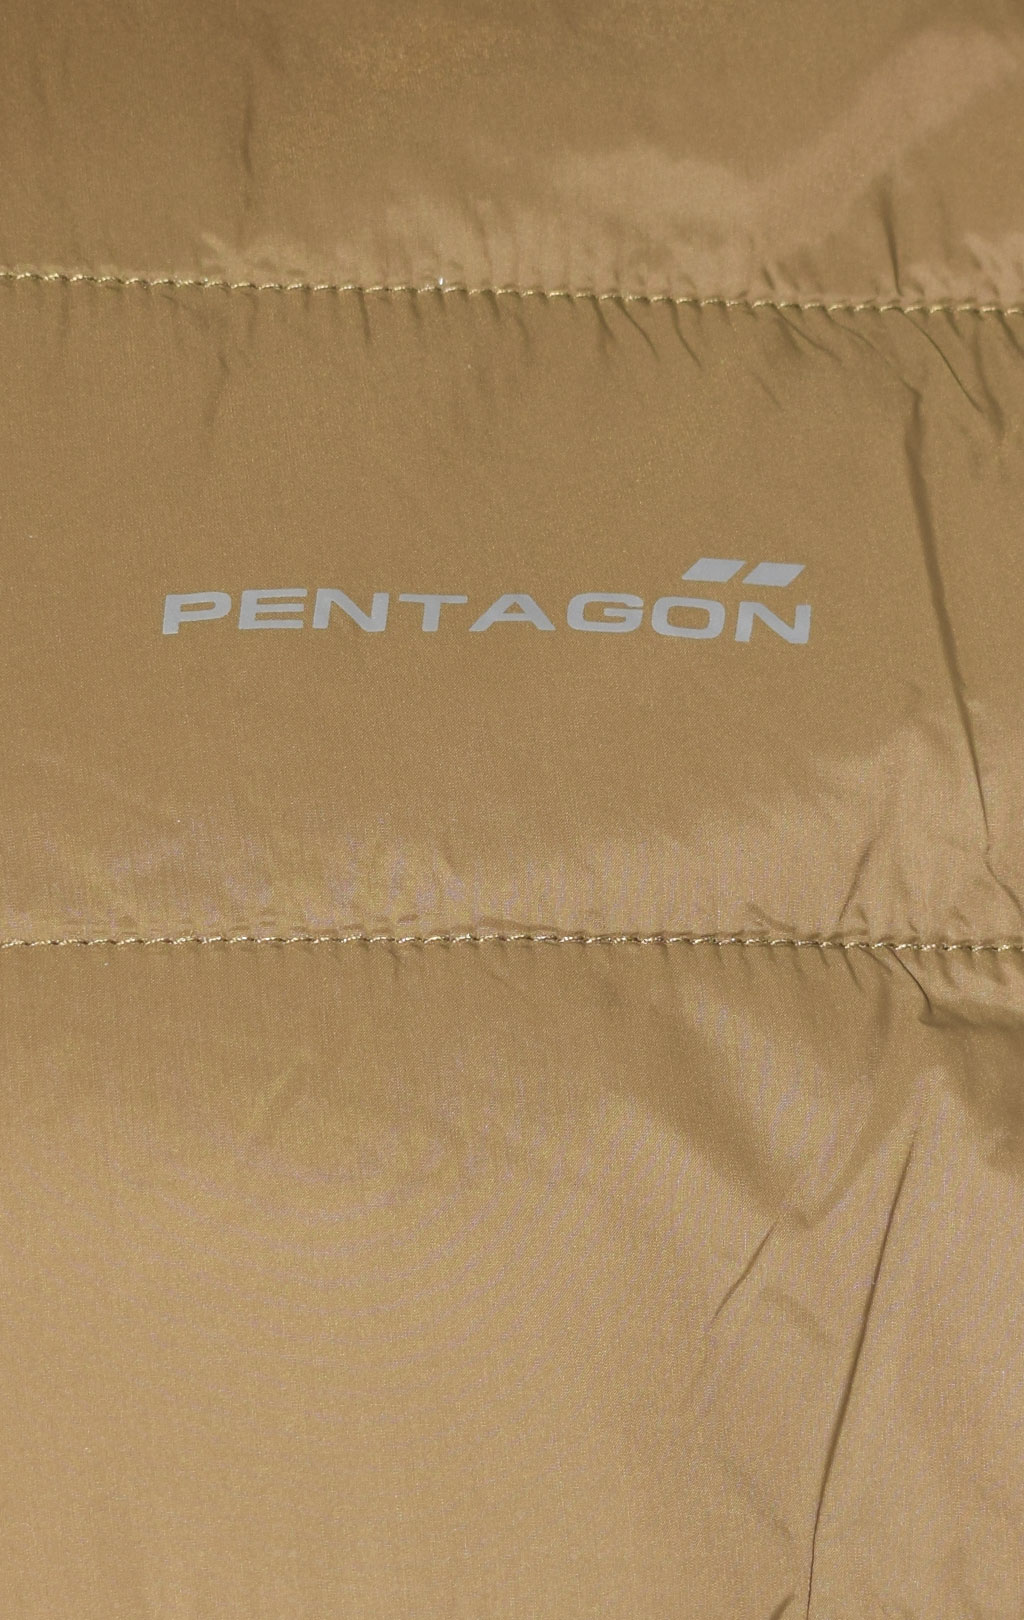 Куртка тактическая Pentagon мембрана GEN V3.0 с подстёжкой coyote 01002-3.0 